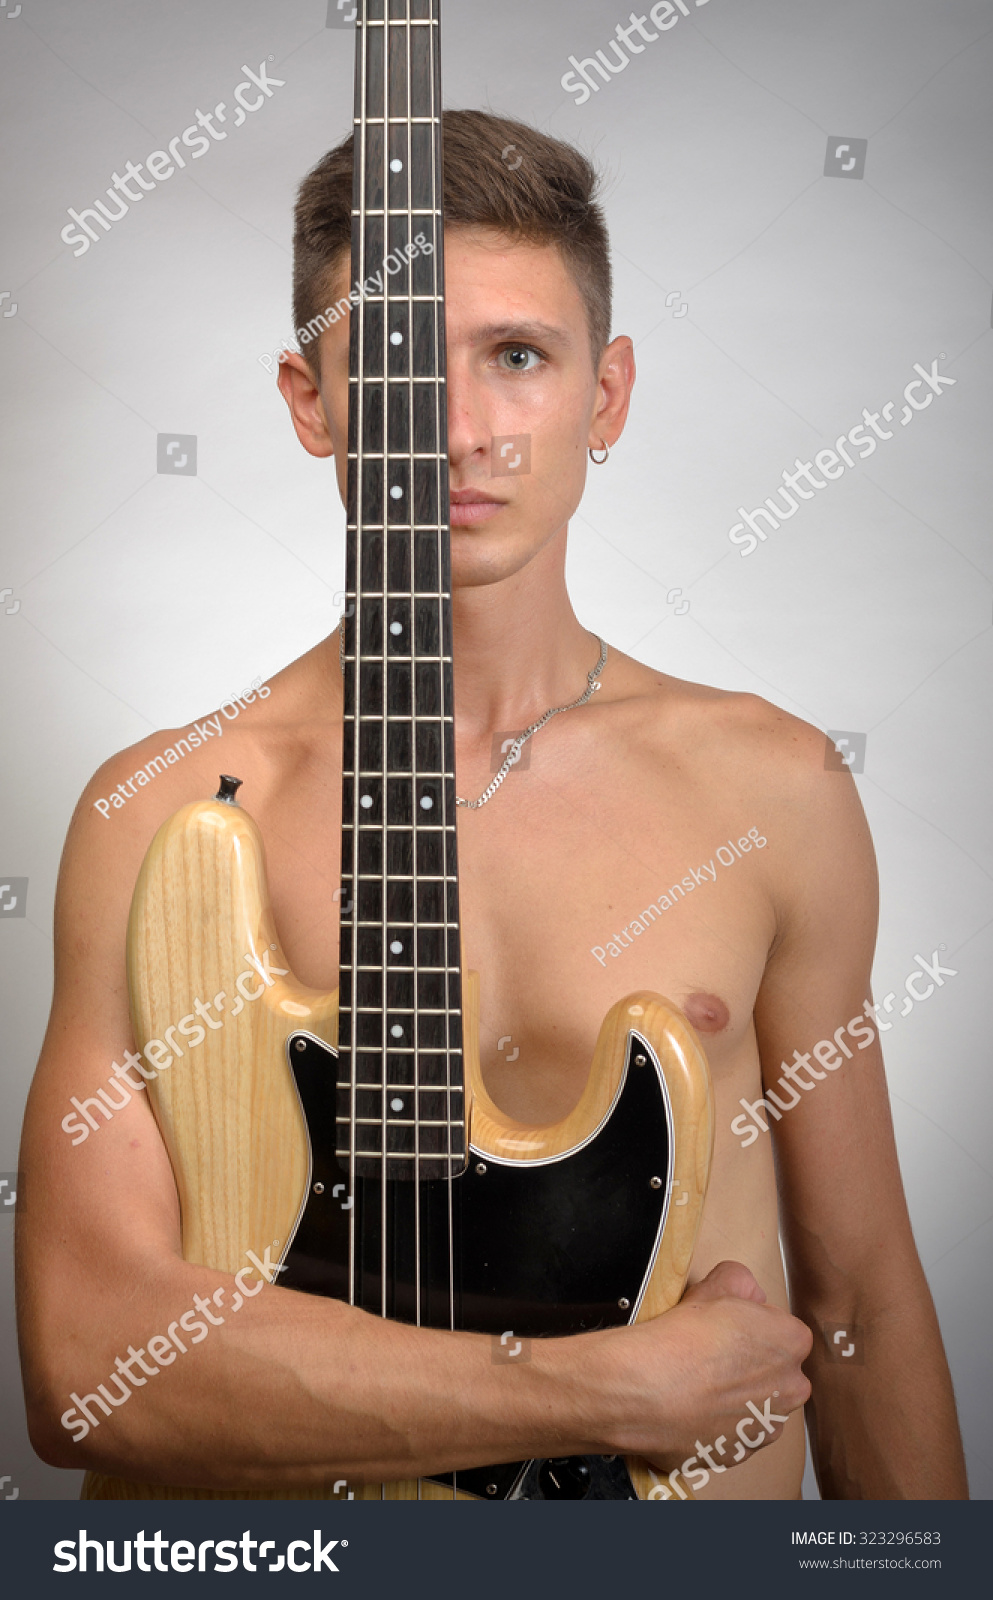 Naked Man Bass Guitar Stock Photo Shutterstock